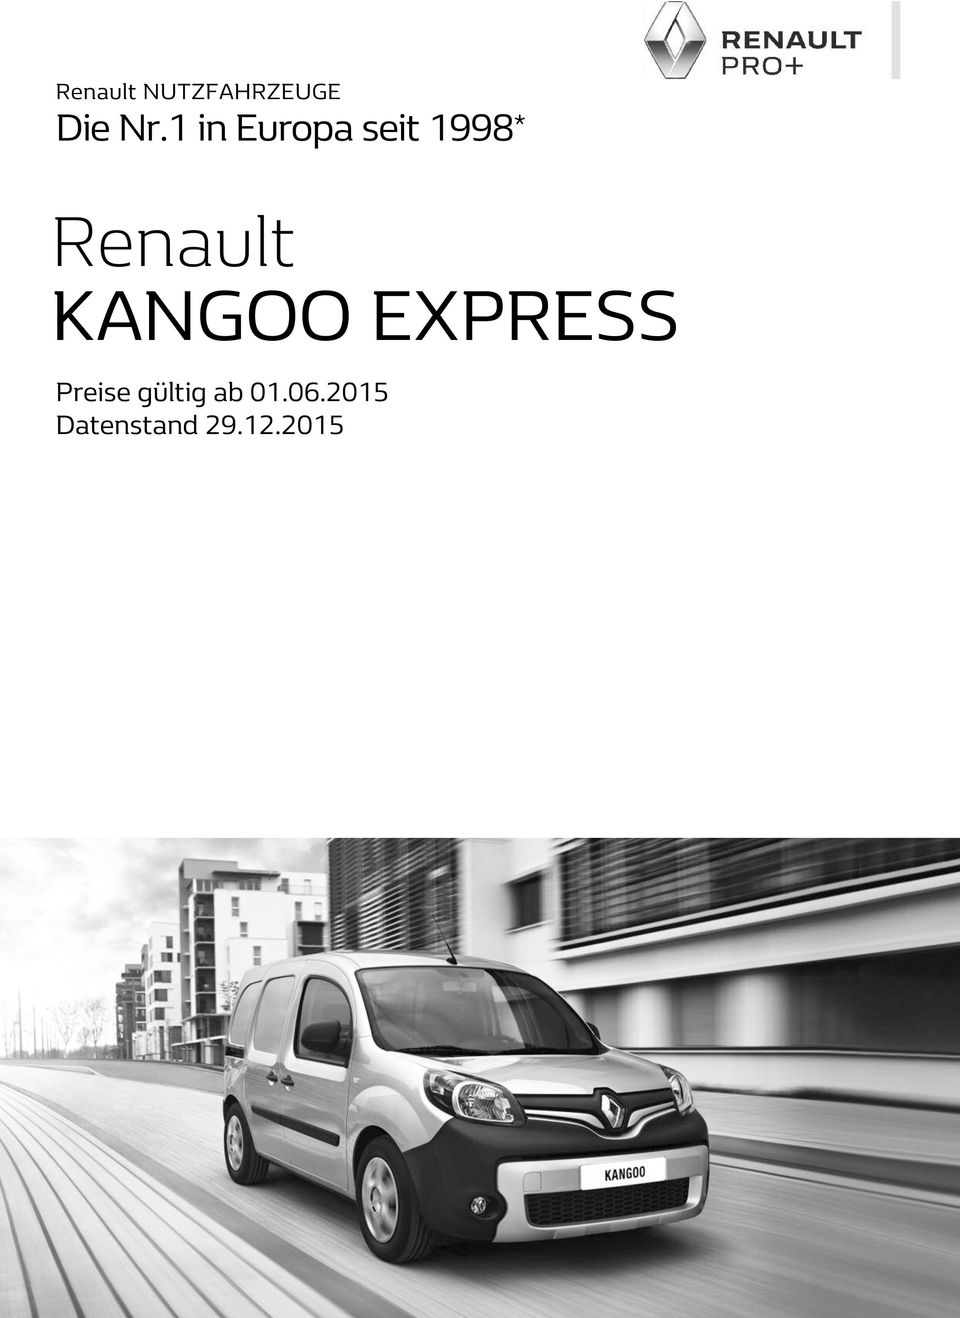 * Renault KANGOO EXPRESS